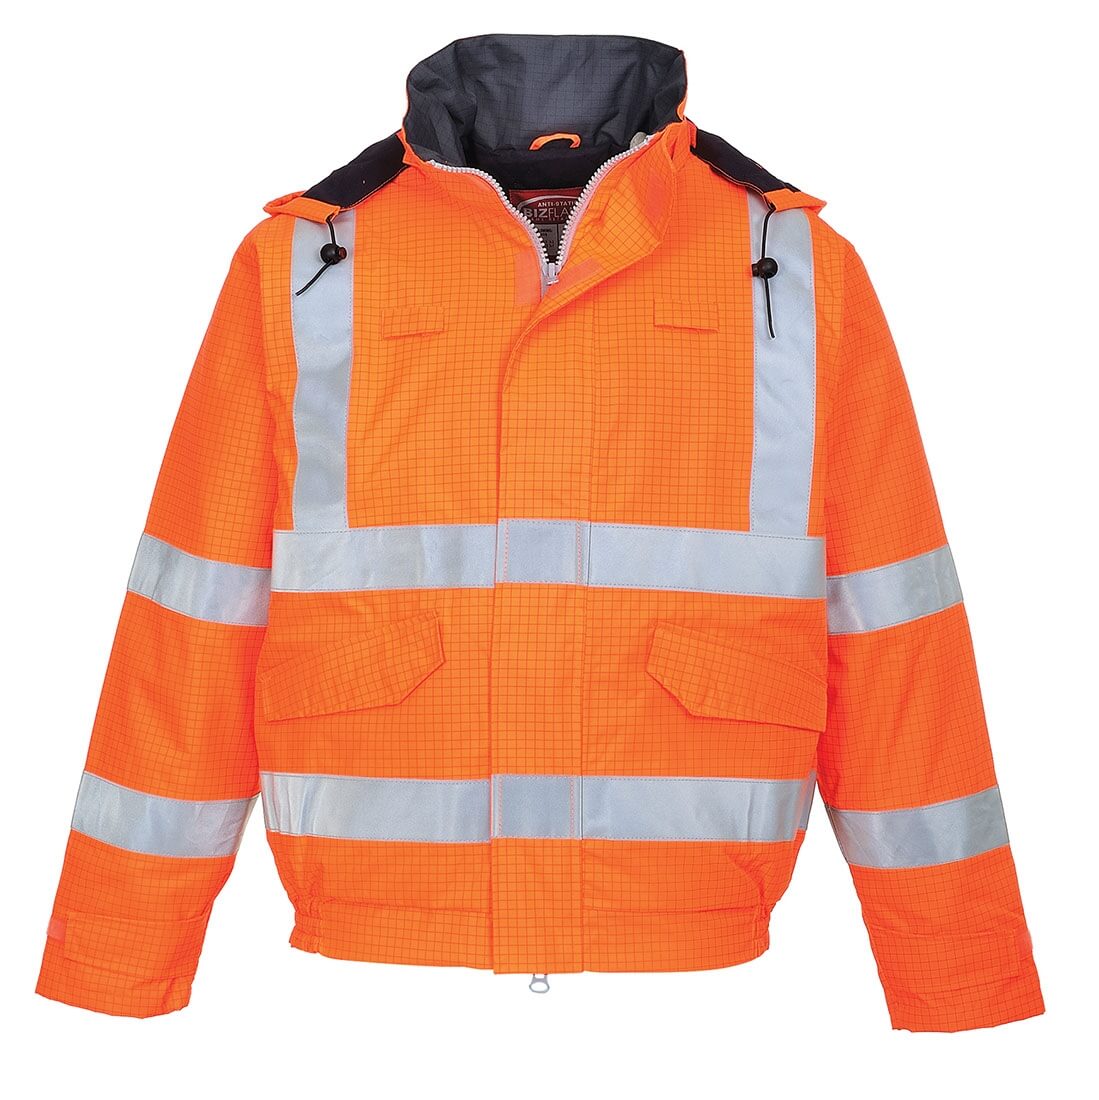 Bizflame Rain Hi-Vis Antistatic FR Bomber Jacket - Safetywear